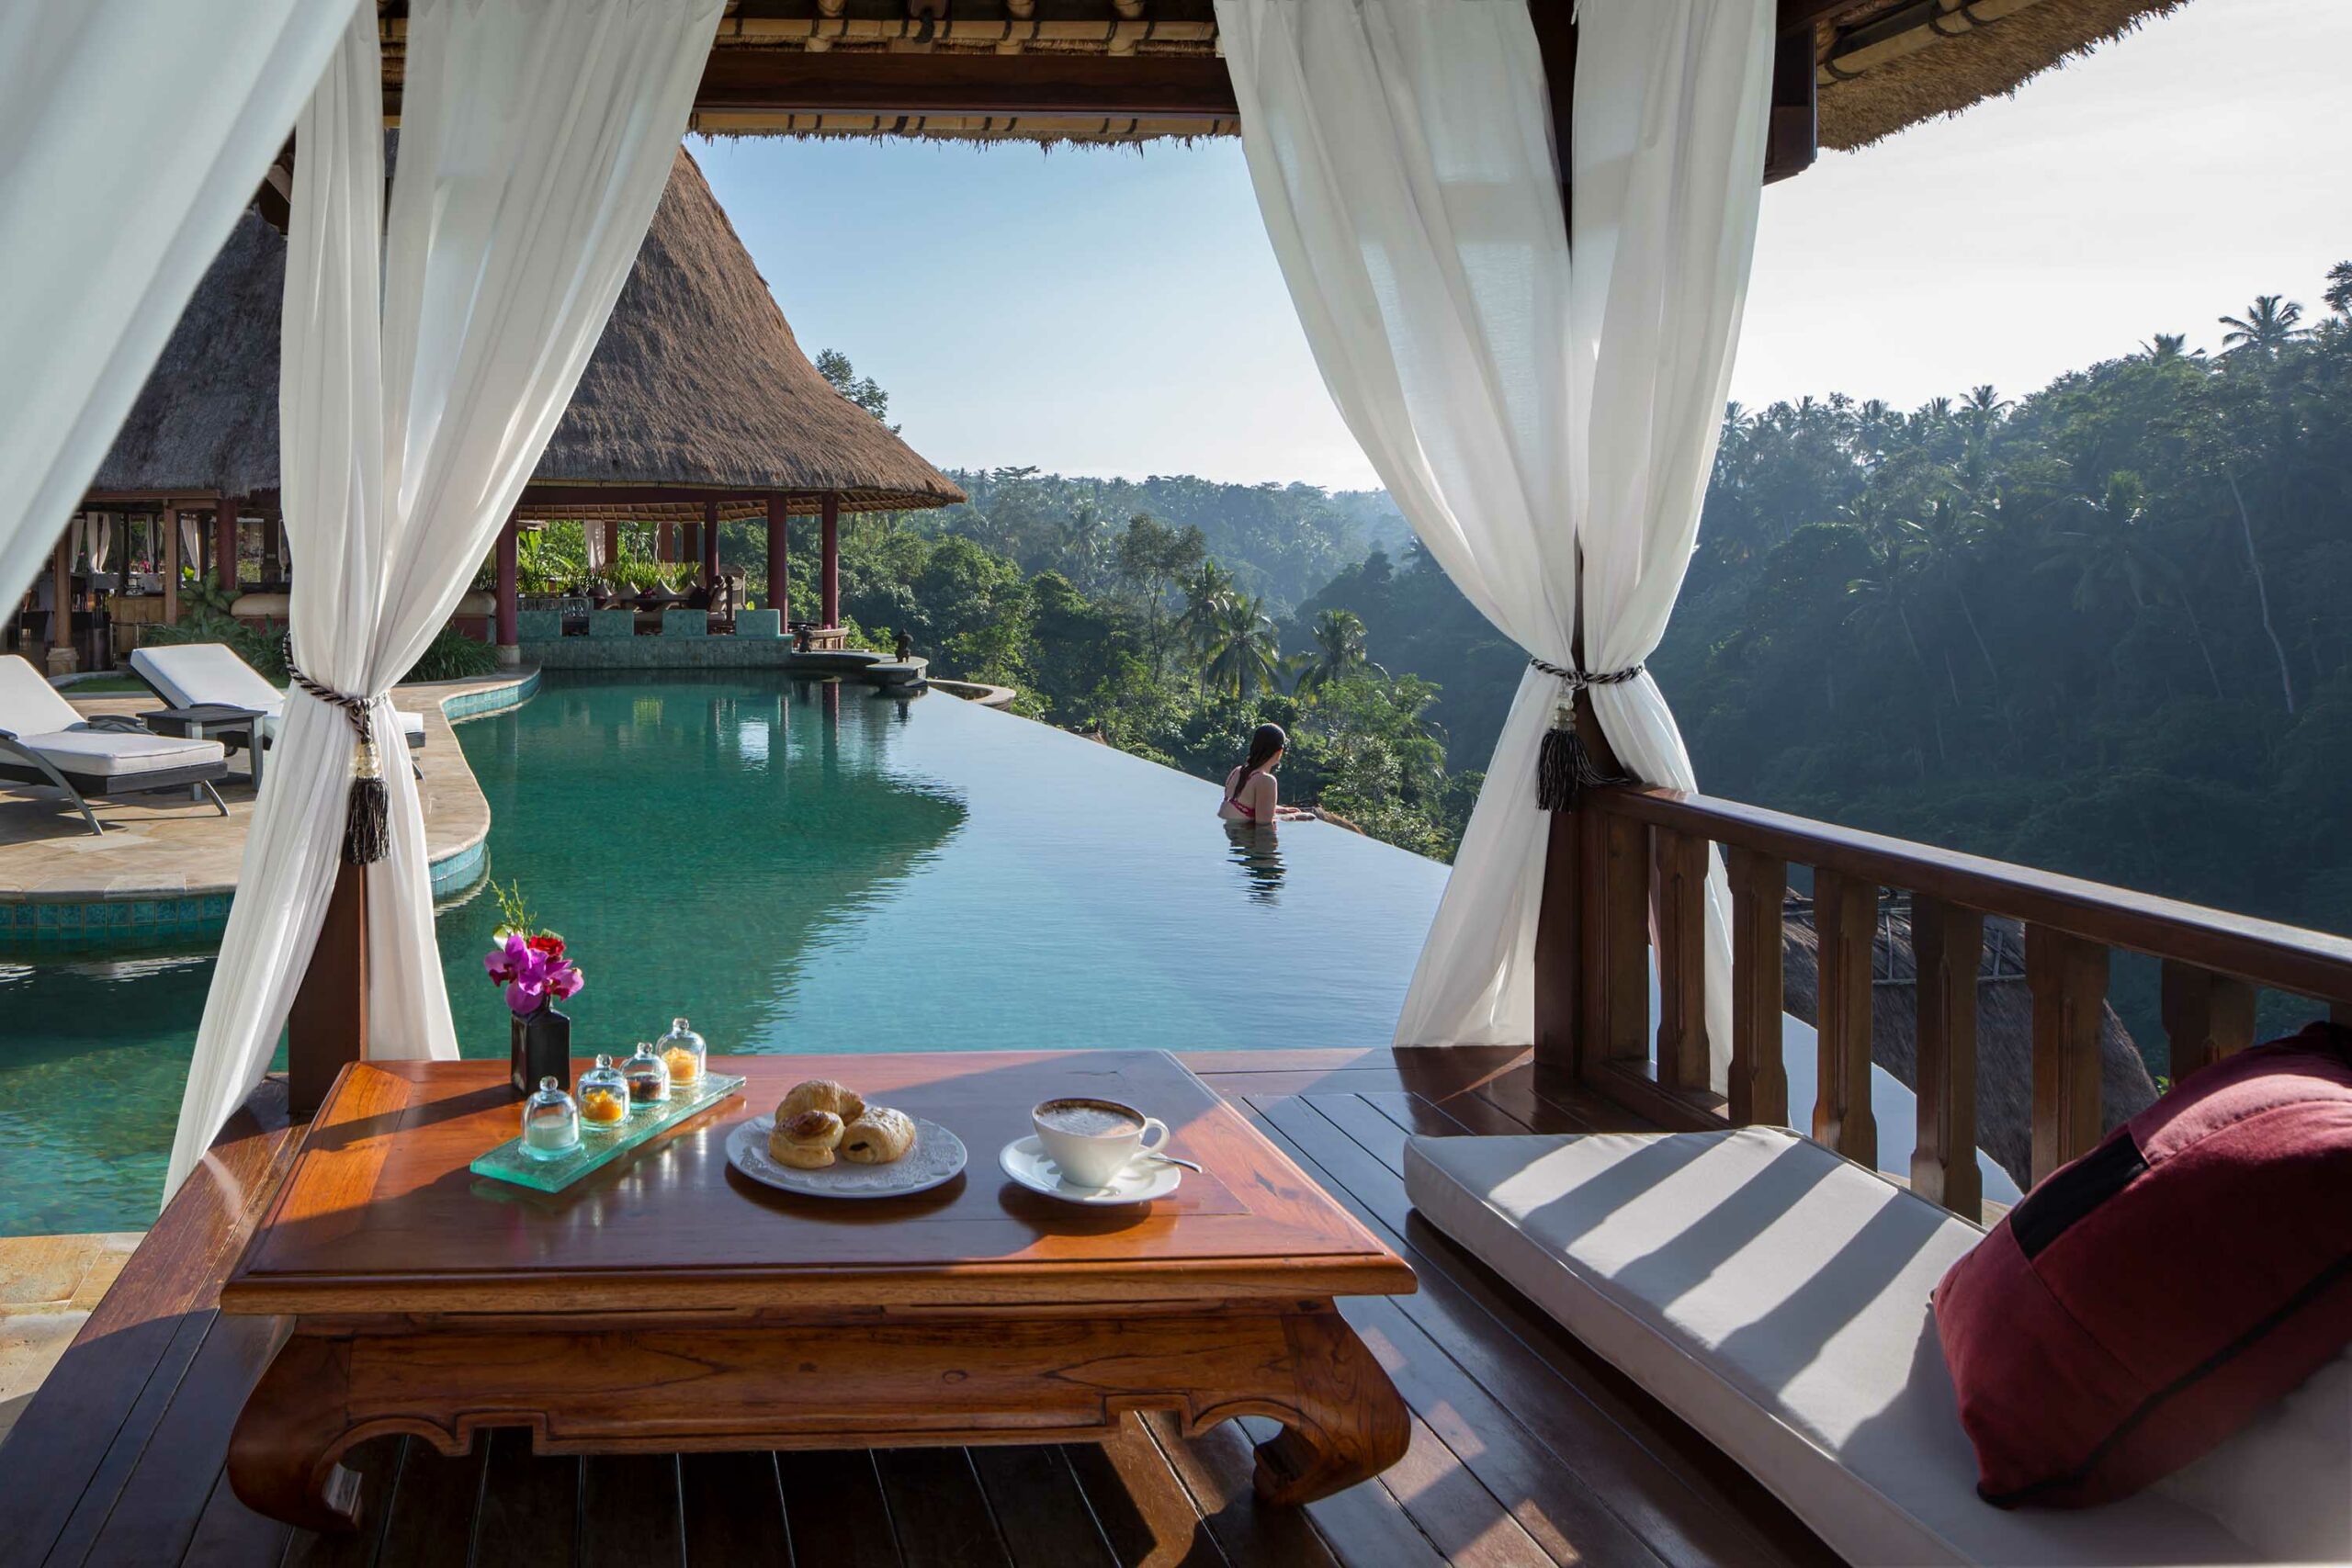 Willkommen im Dschungel! Im Luxus-Hotel auf Bali in Thailand erlebt man die unberührten Tropenwälder hautnah. Ganz abgeschieden, dabei mit allen Annehmlichkeiten, die das Reiseherz begehrt.